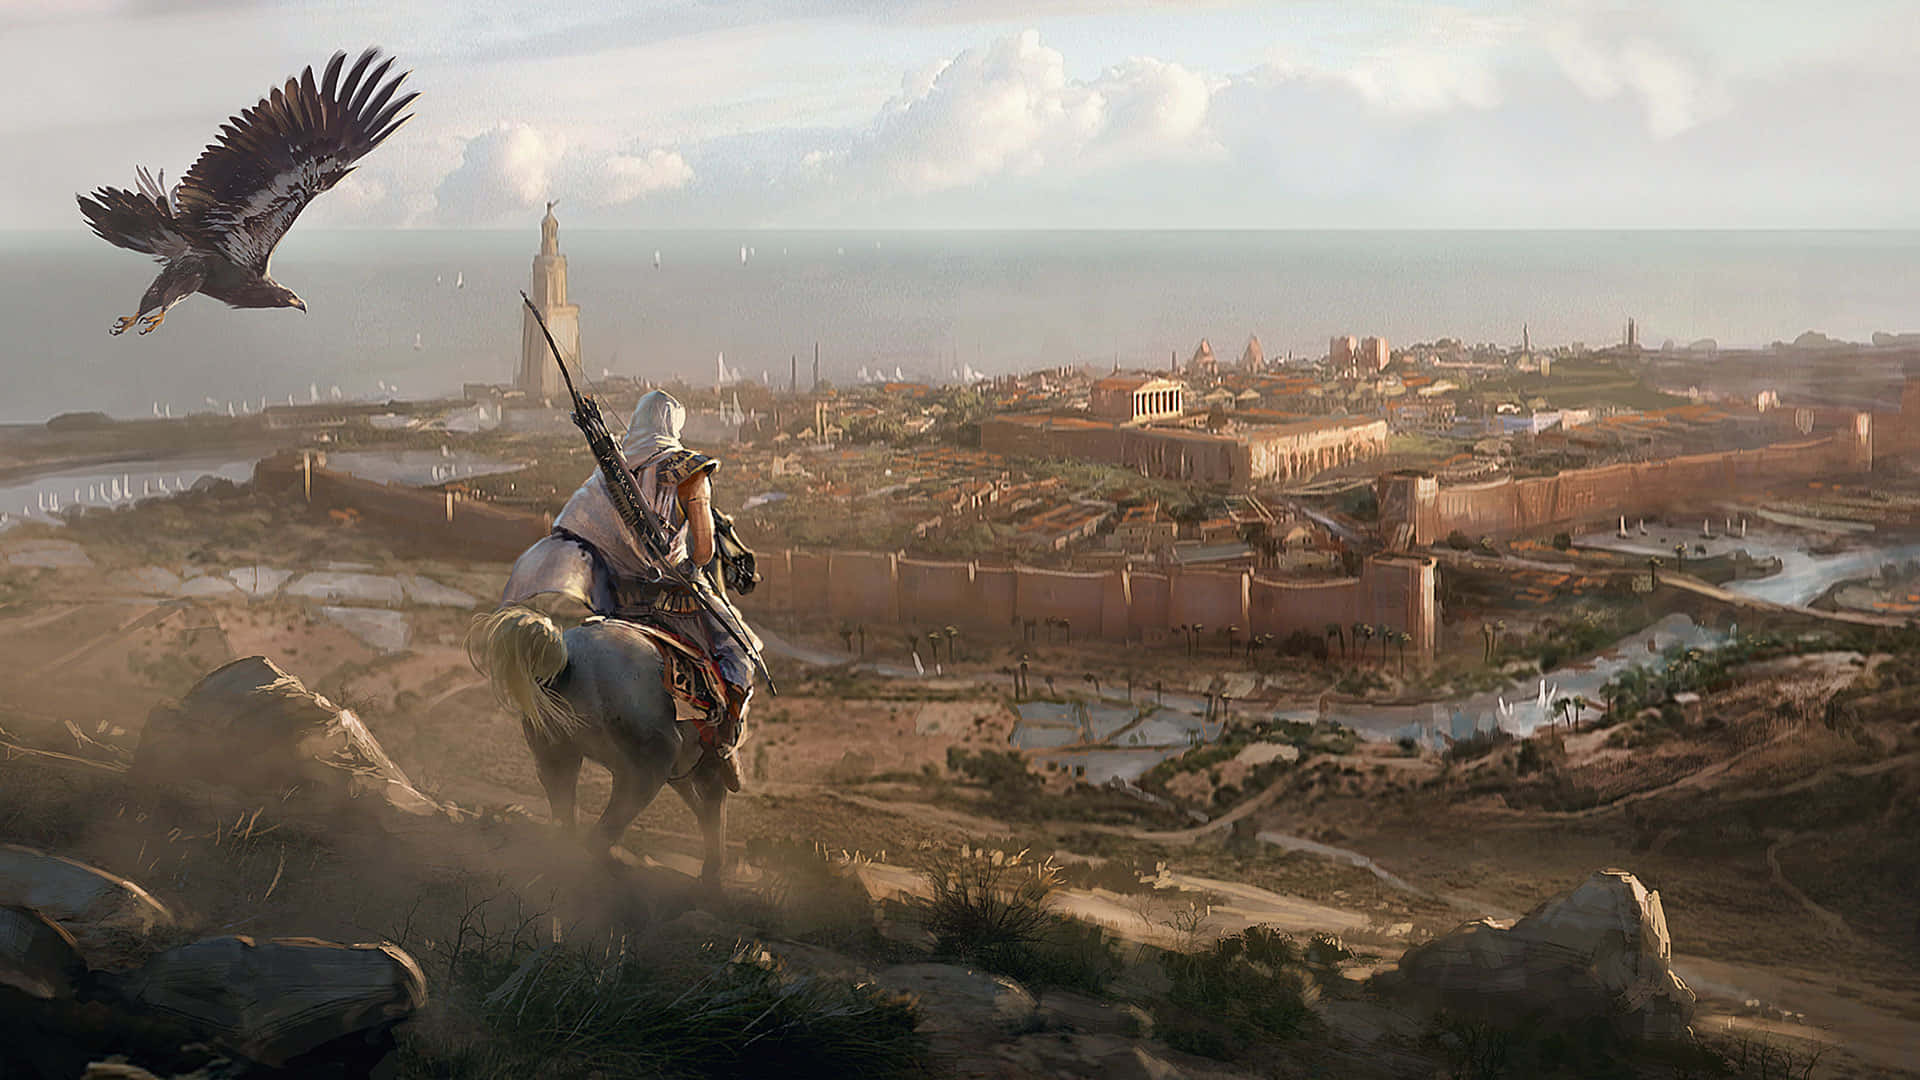 Scoprii Segreti Dell'antico Egitto In Assassin's Creed Origins.